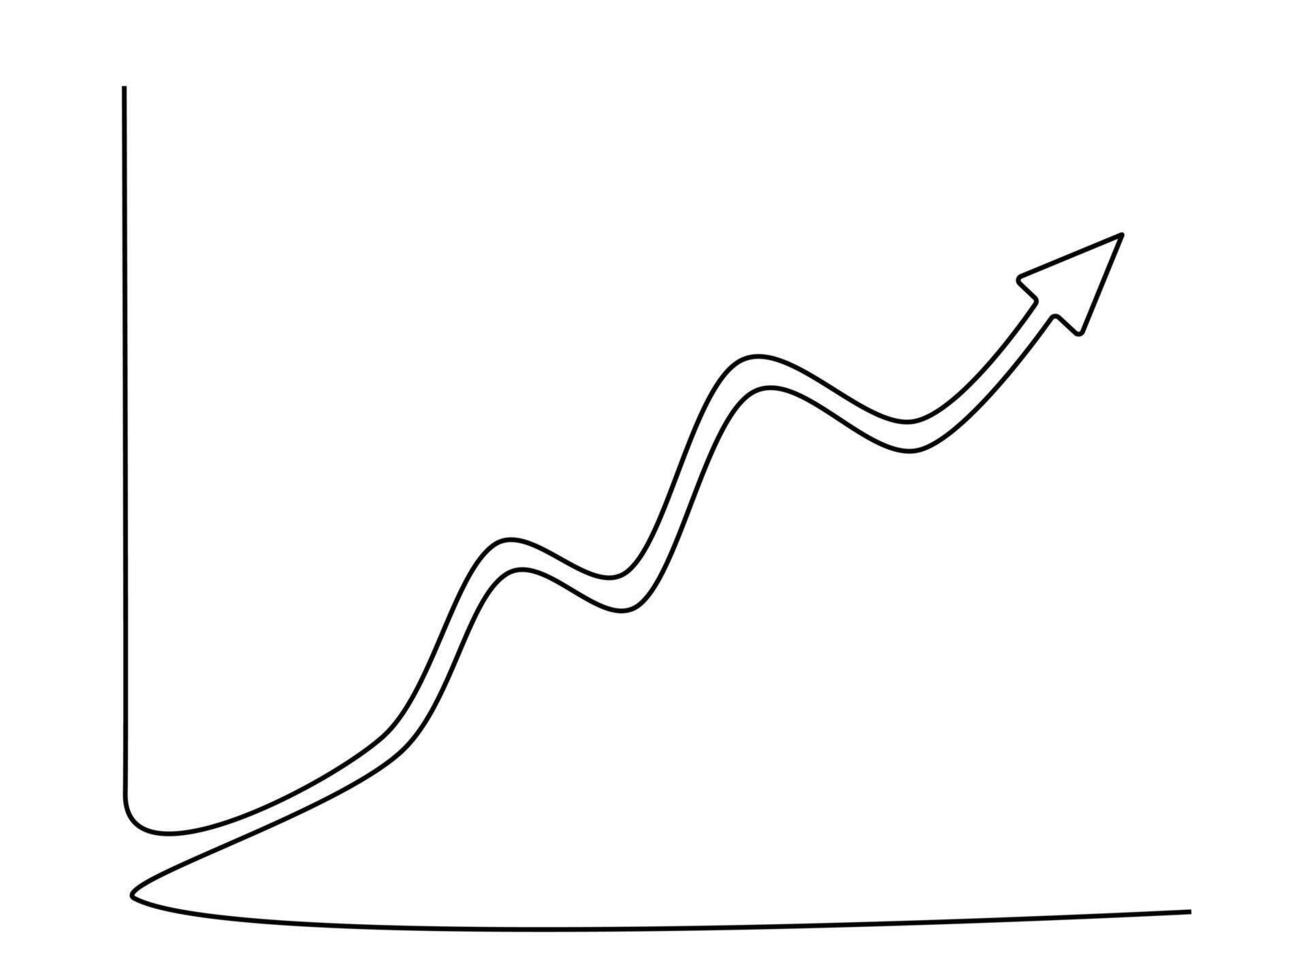 trek een doorlopend lijn van de groei diagram vector